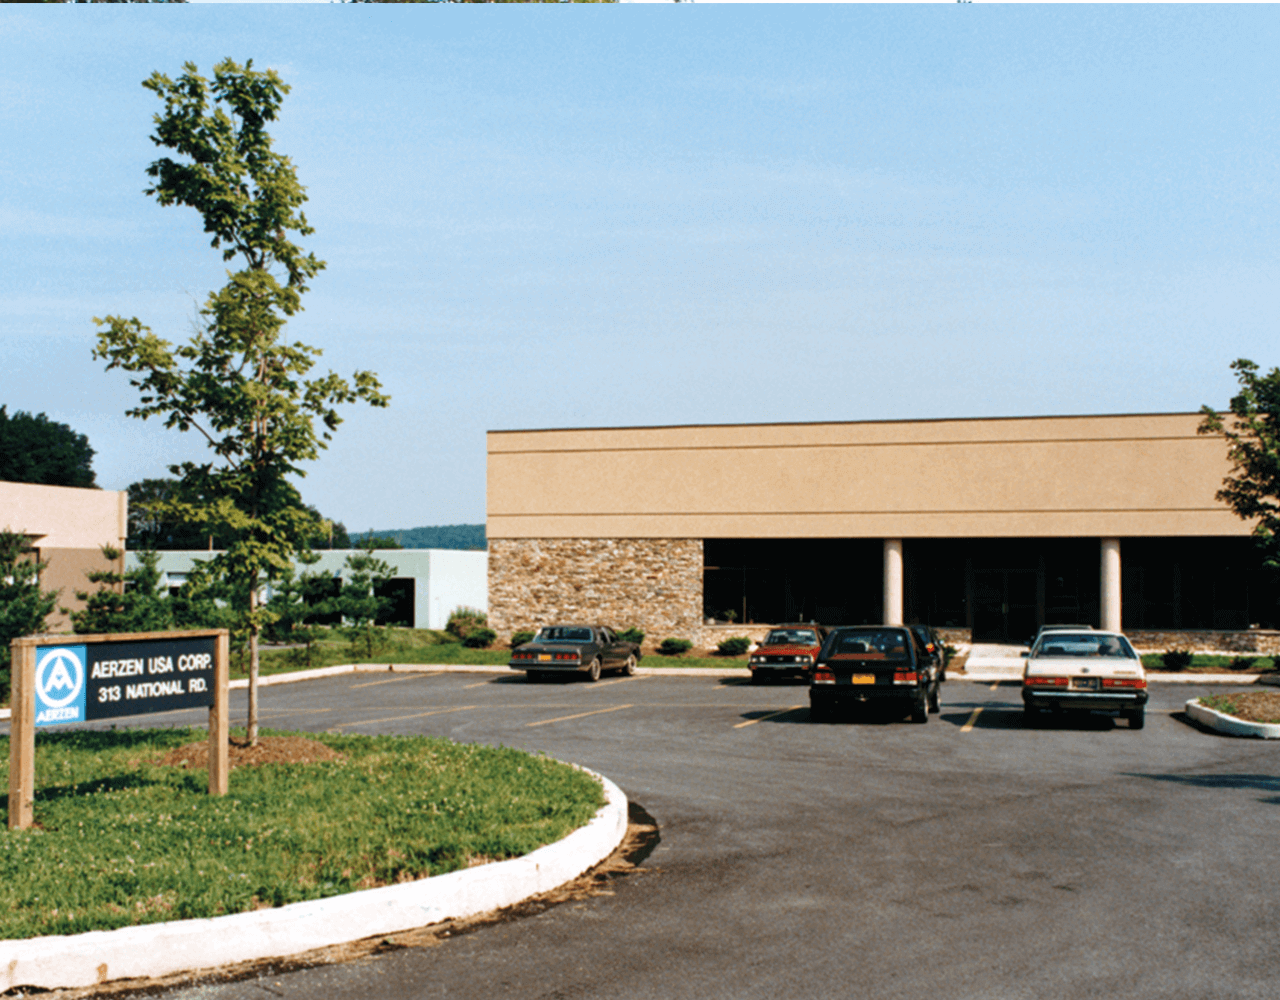 Beeld van het gebouw van de dochterondernemingen AERZEN USA Corporation